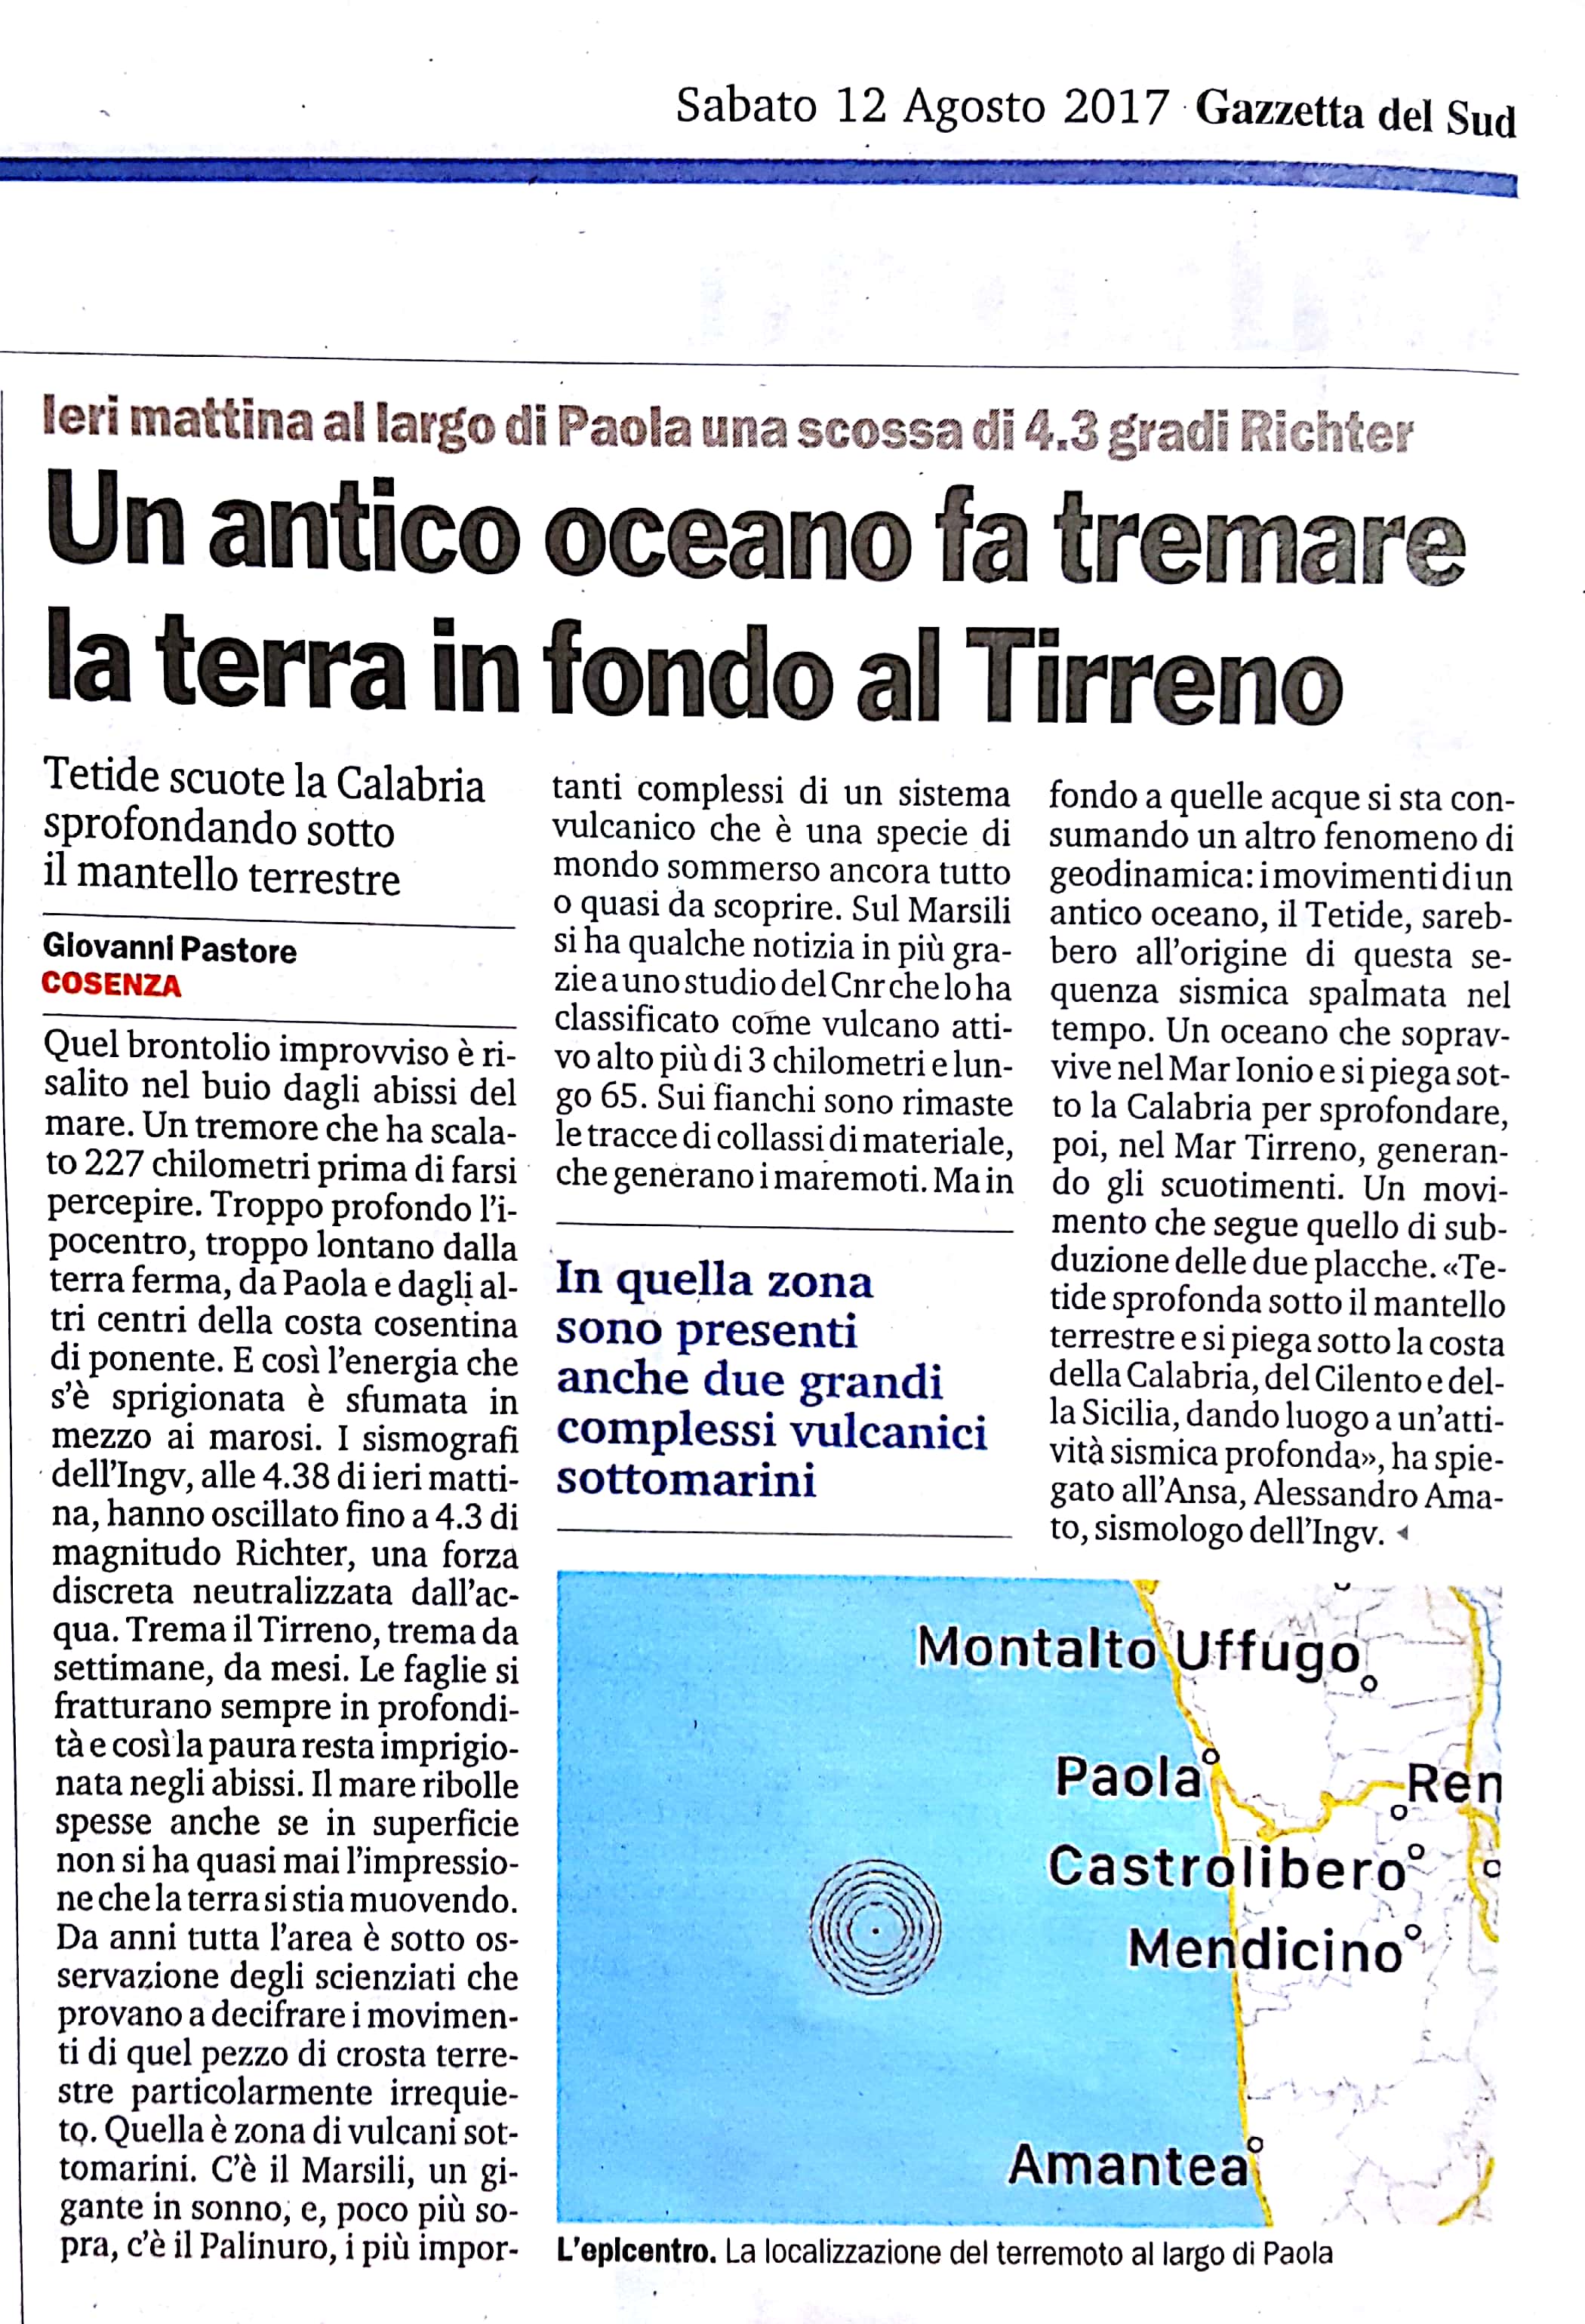 Un antico oceano fa tremare la terra in fondo al Tirreno